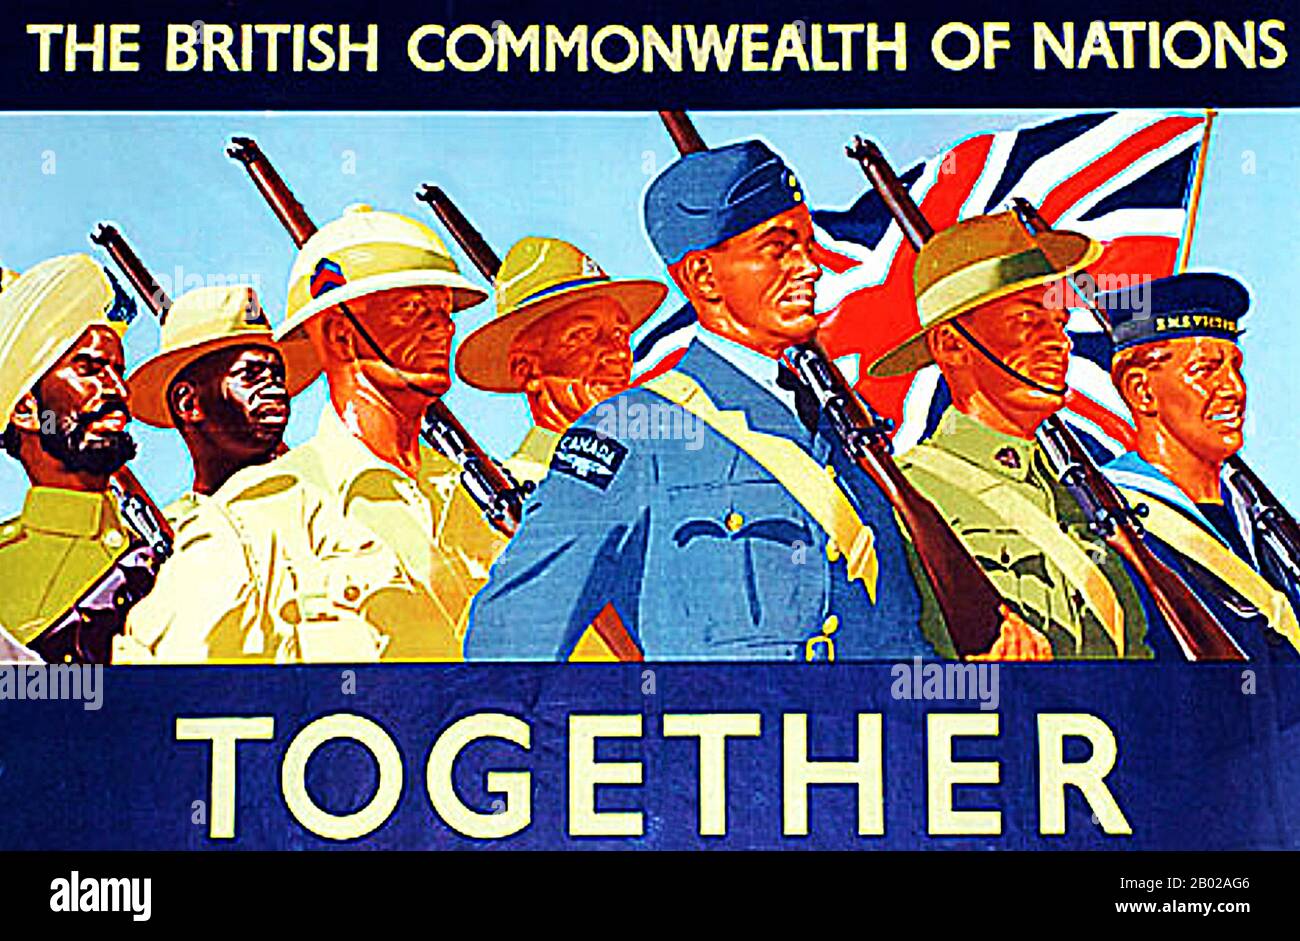 Lord Rosebery beschrieb im Jahr 1884während seines Besuchs in Australien das sich verändernde britische Reich, da einige seiner Kolonien unabhängiger wurden, als "Commonwealth of Nations". Konferenzen britischer und kolonialer Premierminister waren seit dem ersten im Jahr 1887 periodisch aufgetreten, was zur Gründung der kaiserlichen Konferenzen im Jahr 1911 führte. der commonwealth entwickelte sich aus den kaiserlichen Konferenzen. Ein spezifischer Vorschlag wurde von Jan Christiaan Smuts im Jahr 1917 vorgelegt, als er den Begriff "British Commonwealth of Nations" prägte und die "zukünftigen konstitutionellen Beziehungen und Neujustierungen in t" vorsah Stockfoto